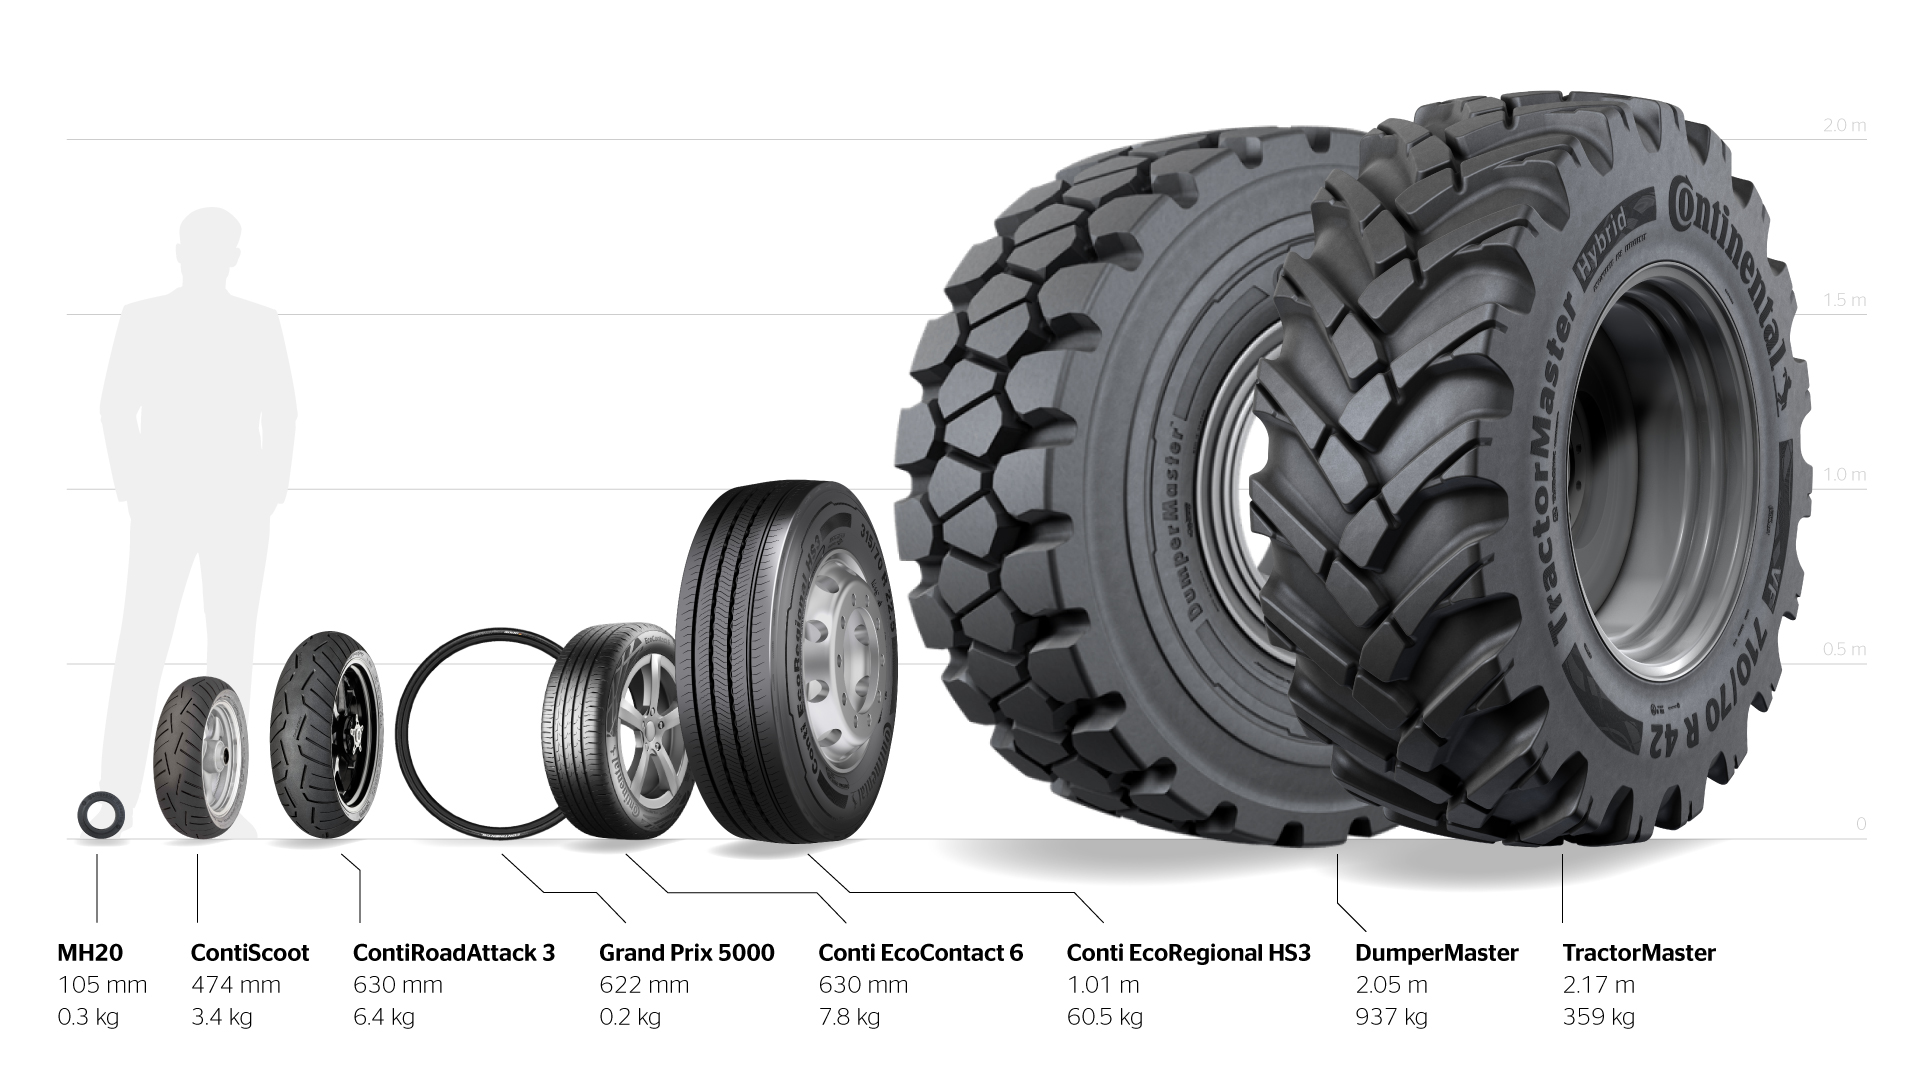 작은 타이어부터 큰 타이어까지 다양한 모양과 크기의 타이어.